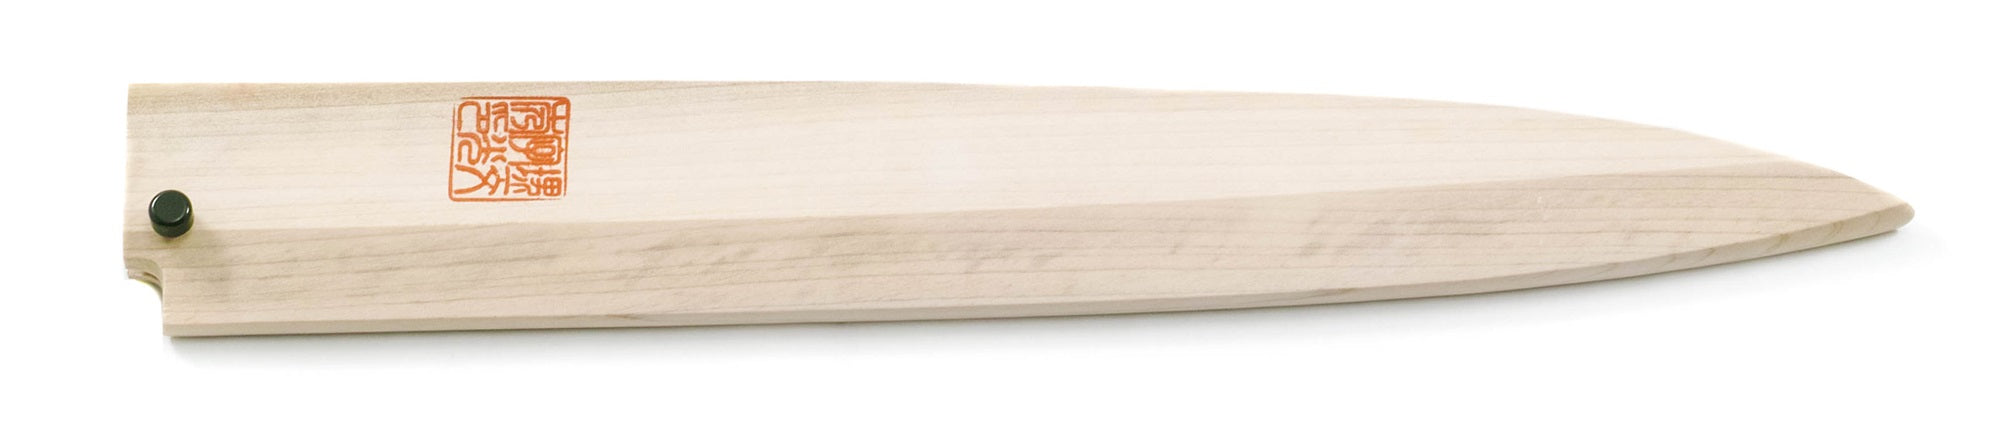 Fourreau en bois pour Couteau Fugubiki